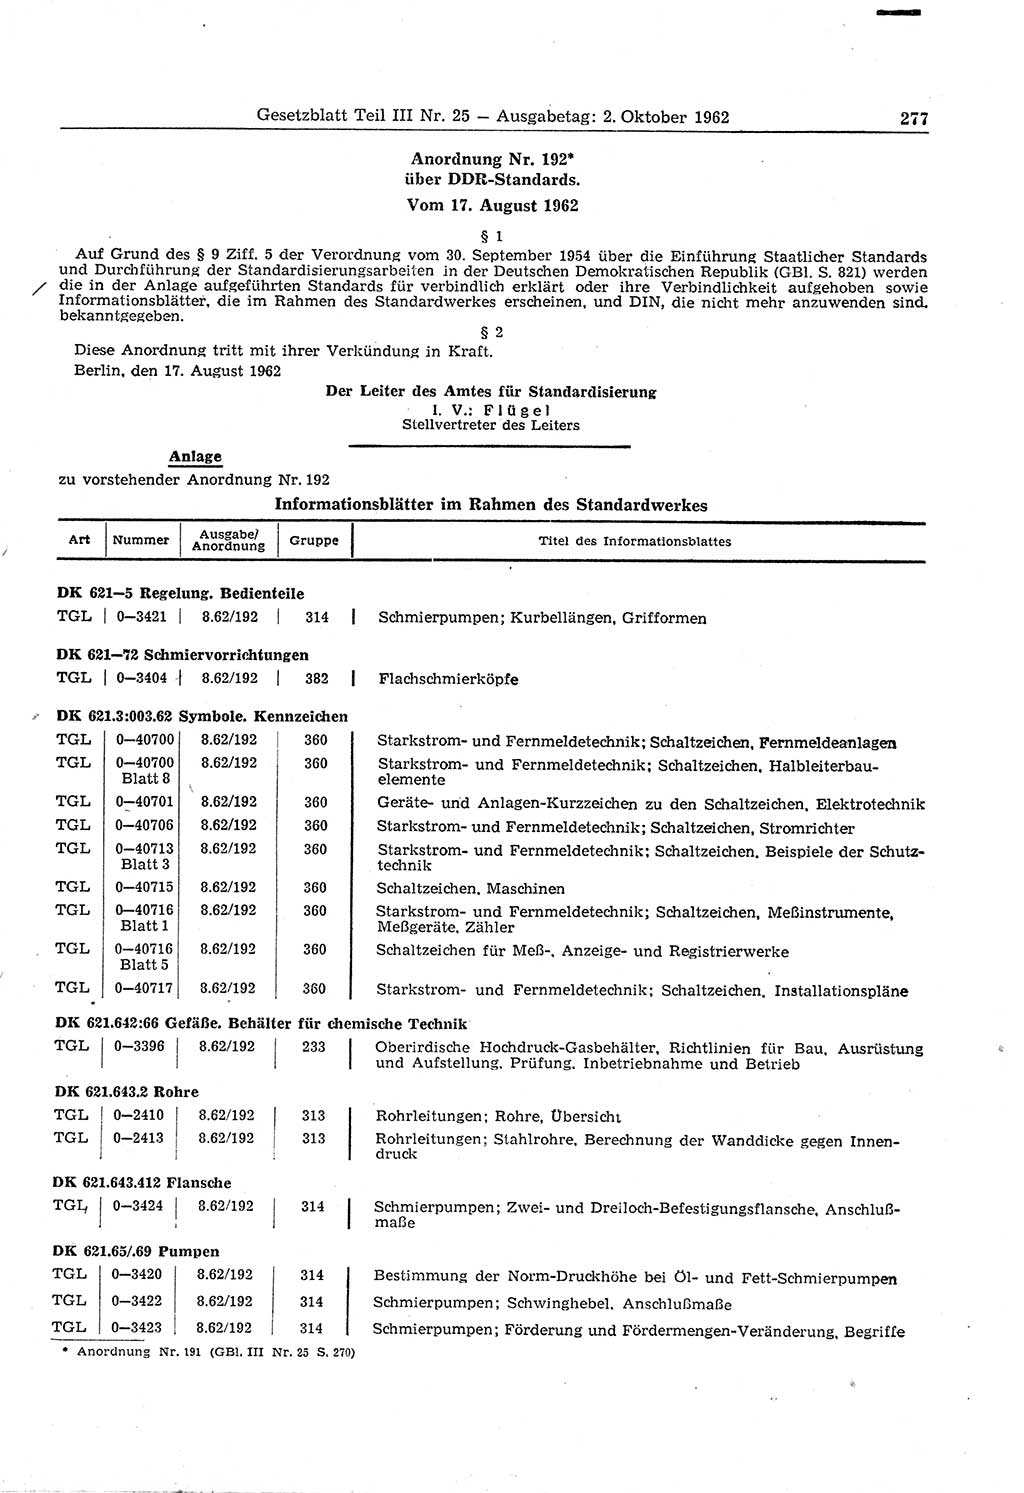 Gesetzblatt (GBl.) der Deutschen Demokratischen Republik (DDR) Teil ⅠⅠⅠ 1962, Seite 277 (GBl. DDR ⅠⅠⅠ 1962, S. 277)